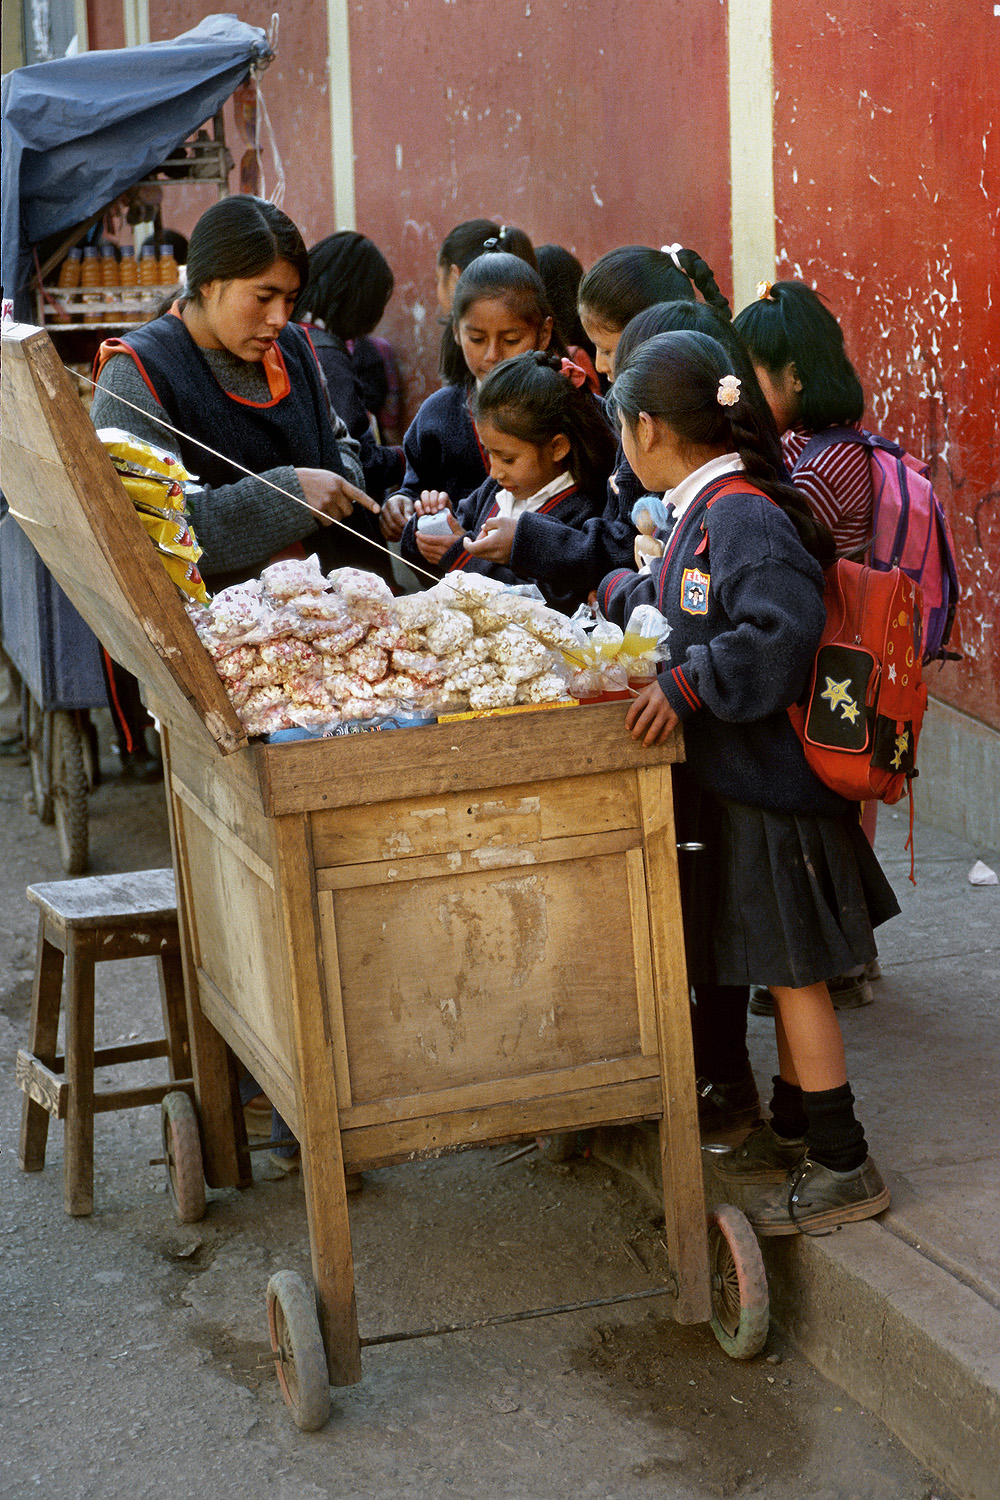 bill-hocker-school-vendor-cusco-peru-2005